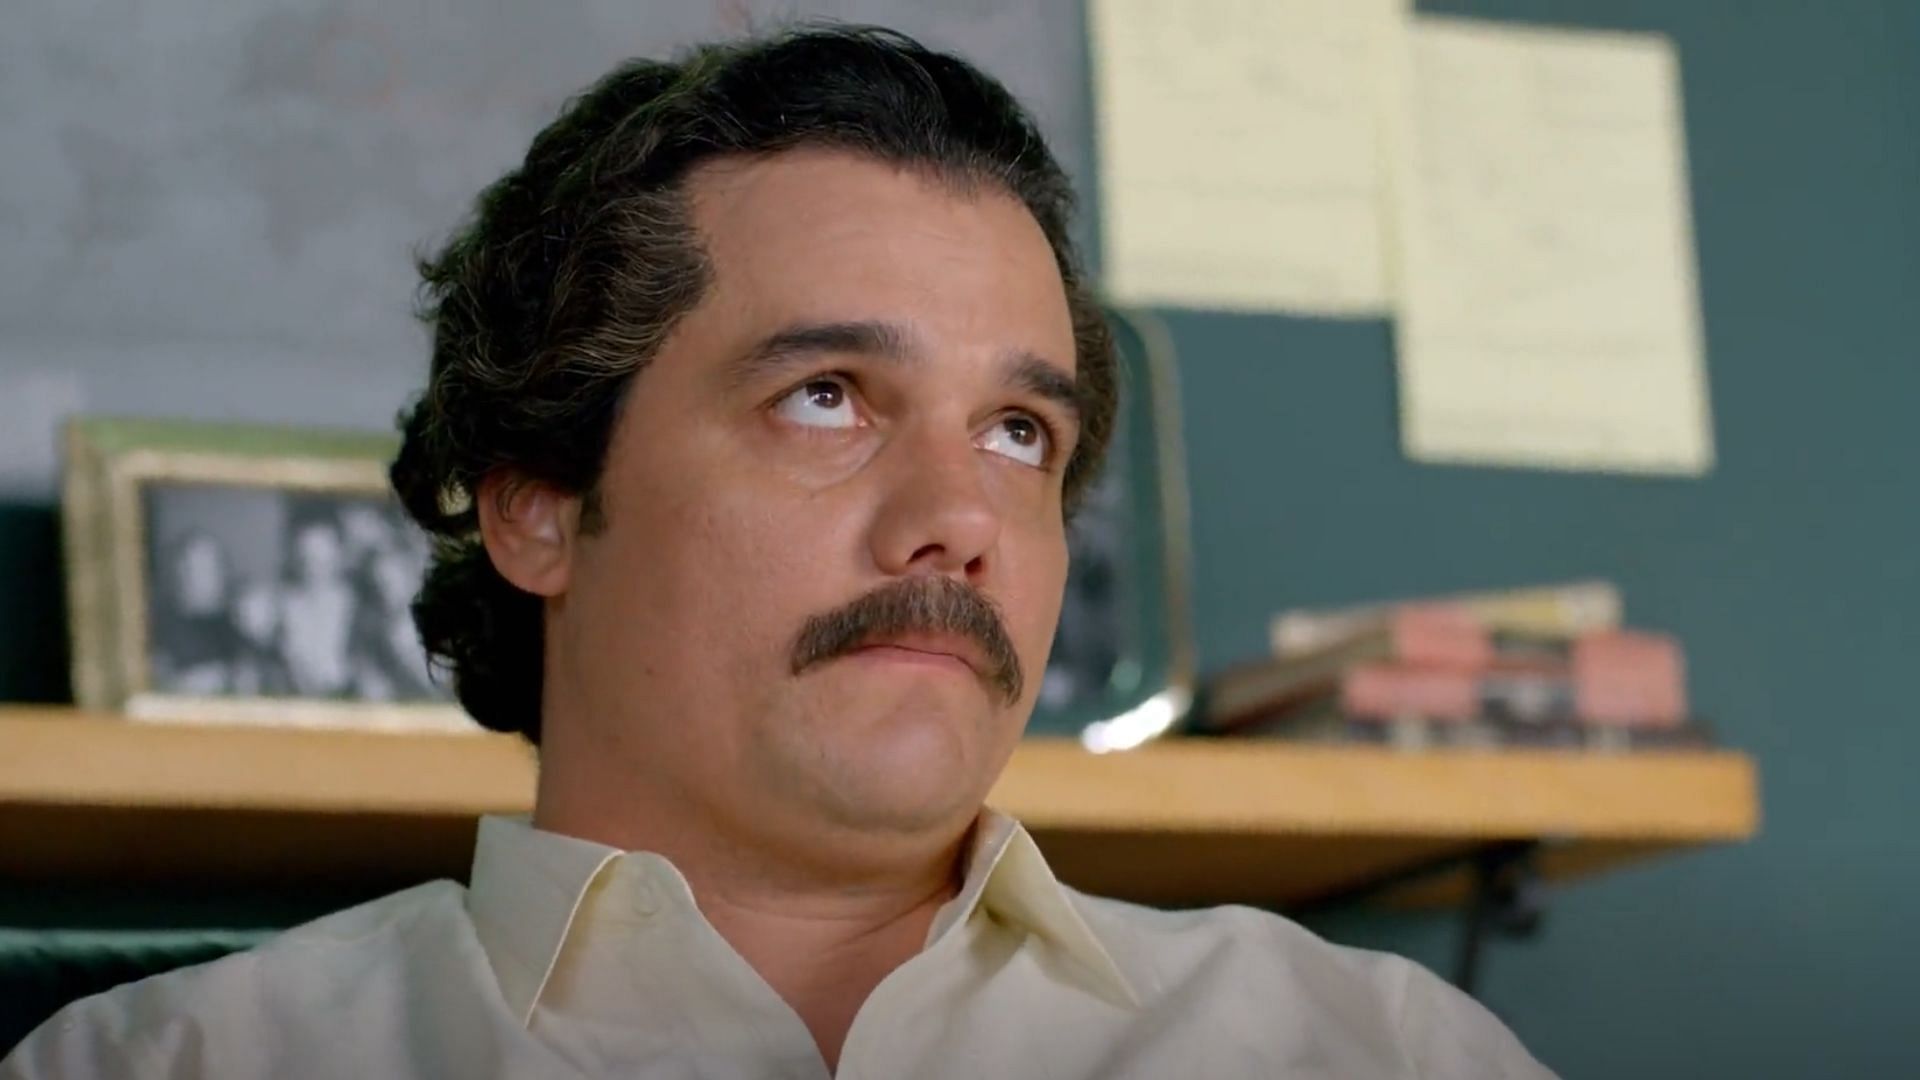 Pablo Escobar in Narcos (Image via @Netflix)